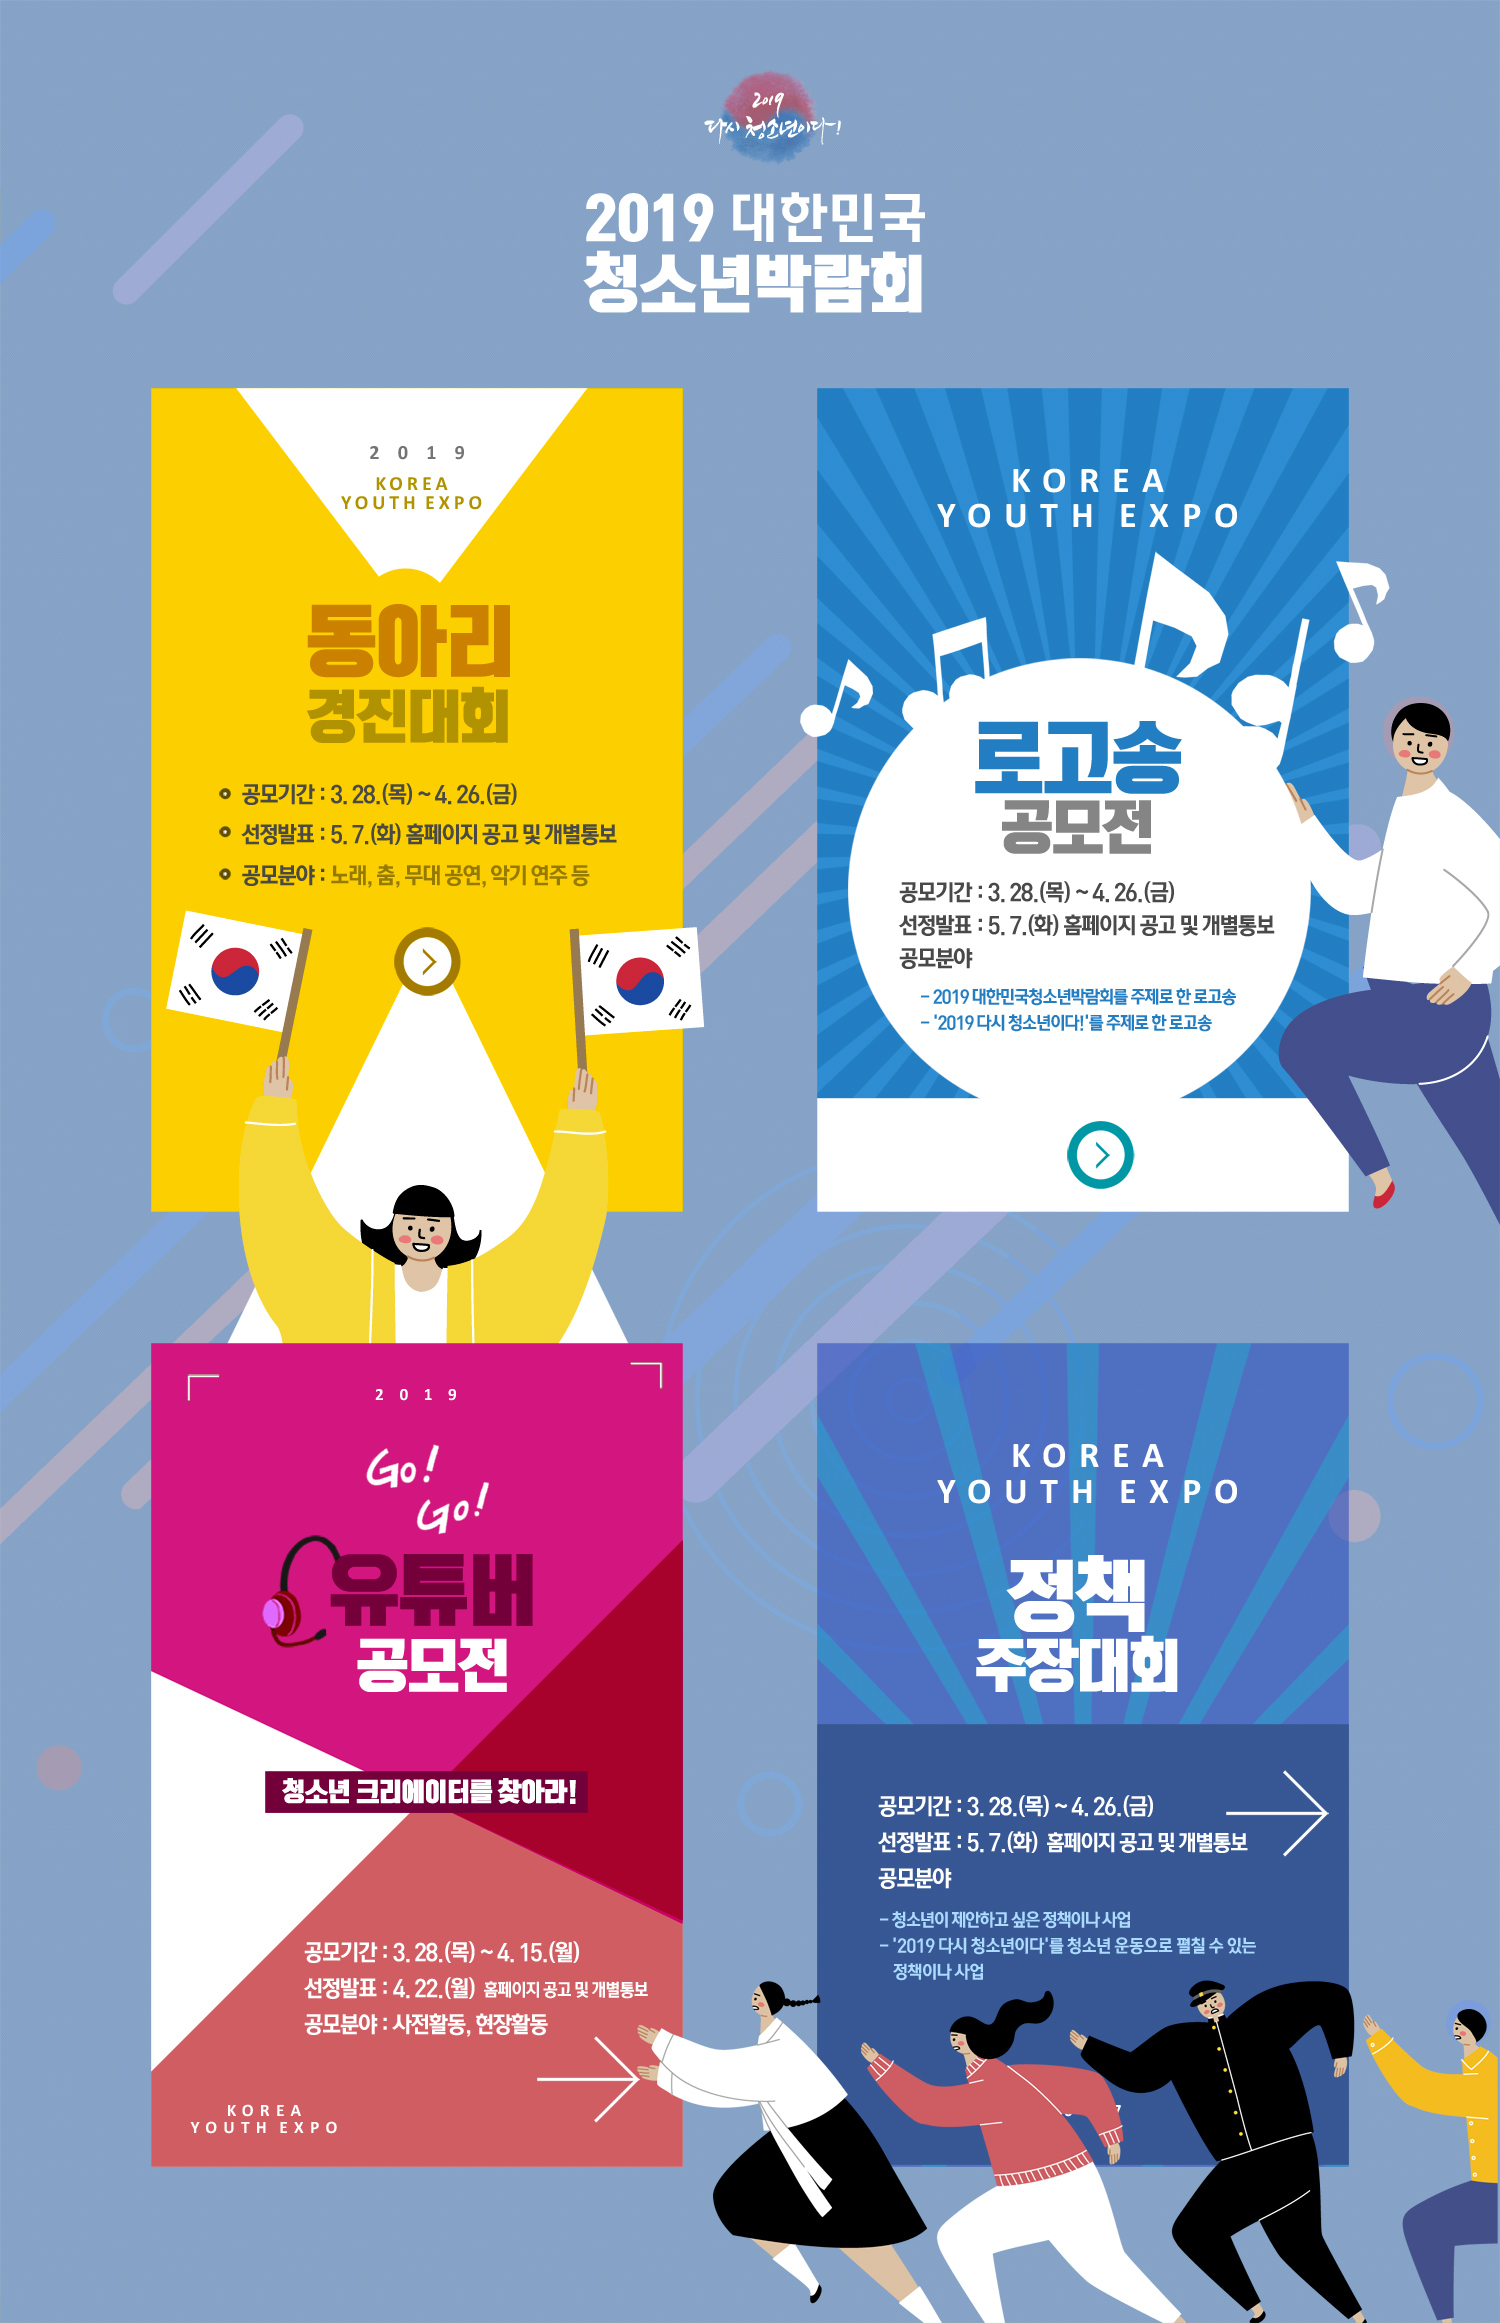 2019년 제15회 대한민국 청소년 박람회 공모전 참여 홍보